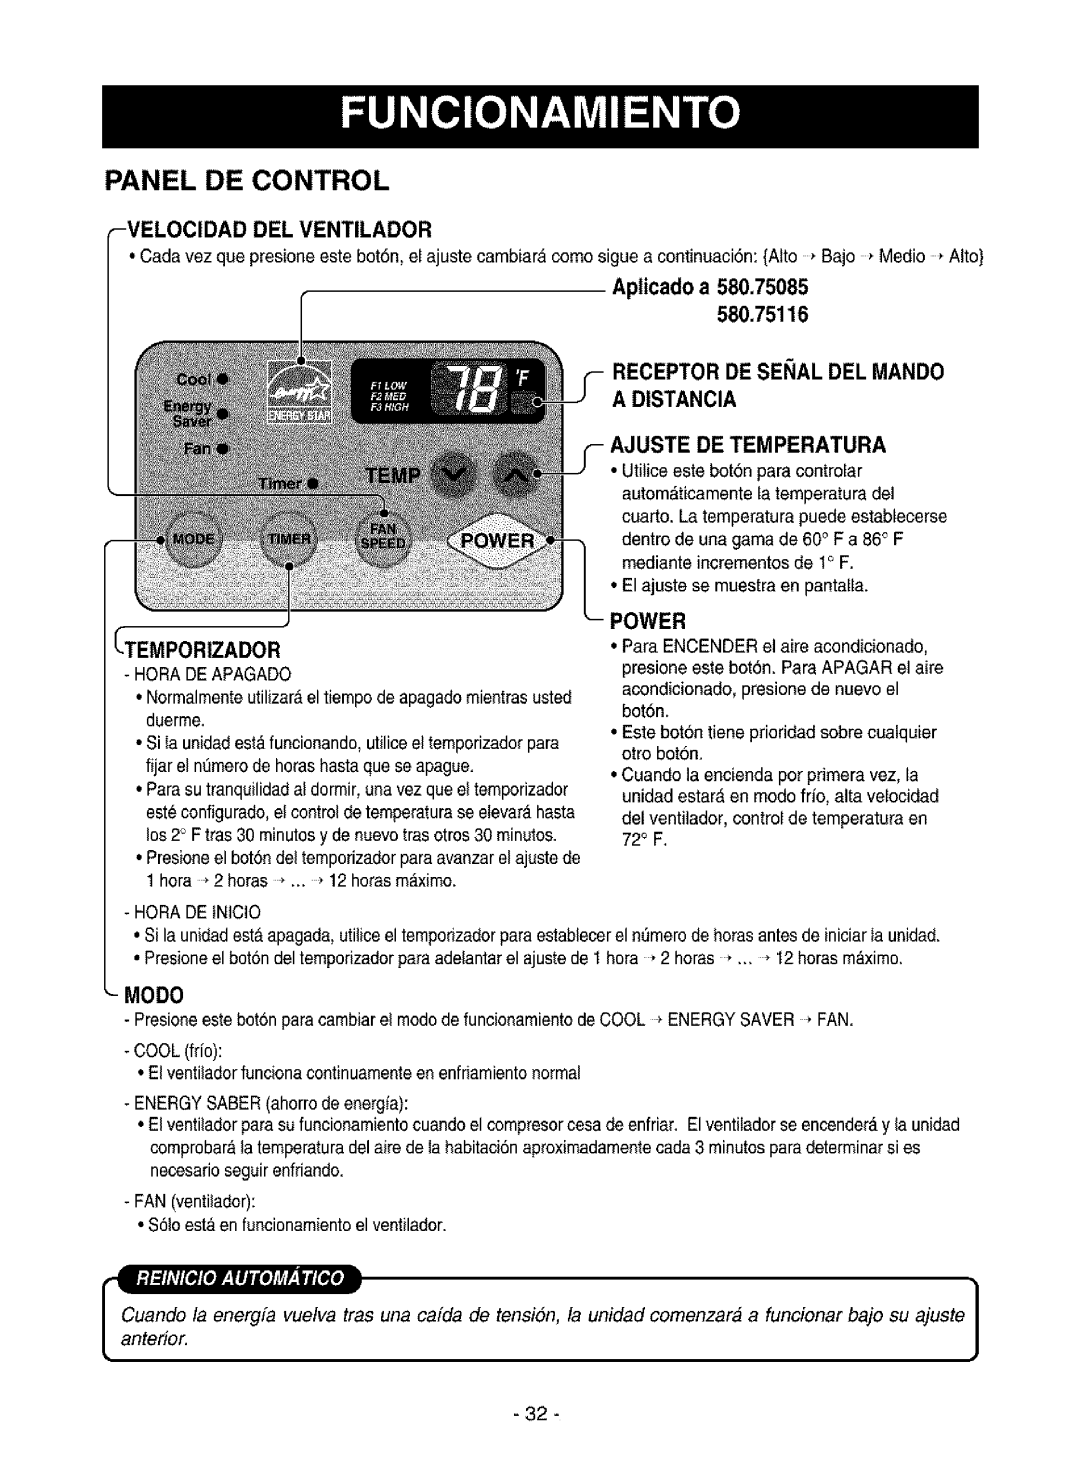 Kenmore 580.75116 Panel De Control, Velocidad Del Ventilador, Aplicado a, Ei Al Del Mando A Distancia, Temporizador, Modo 